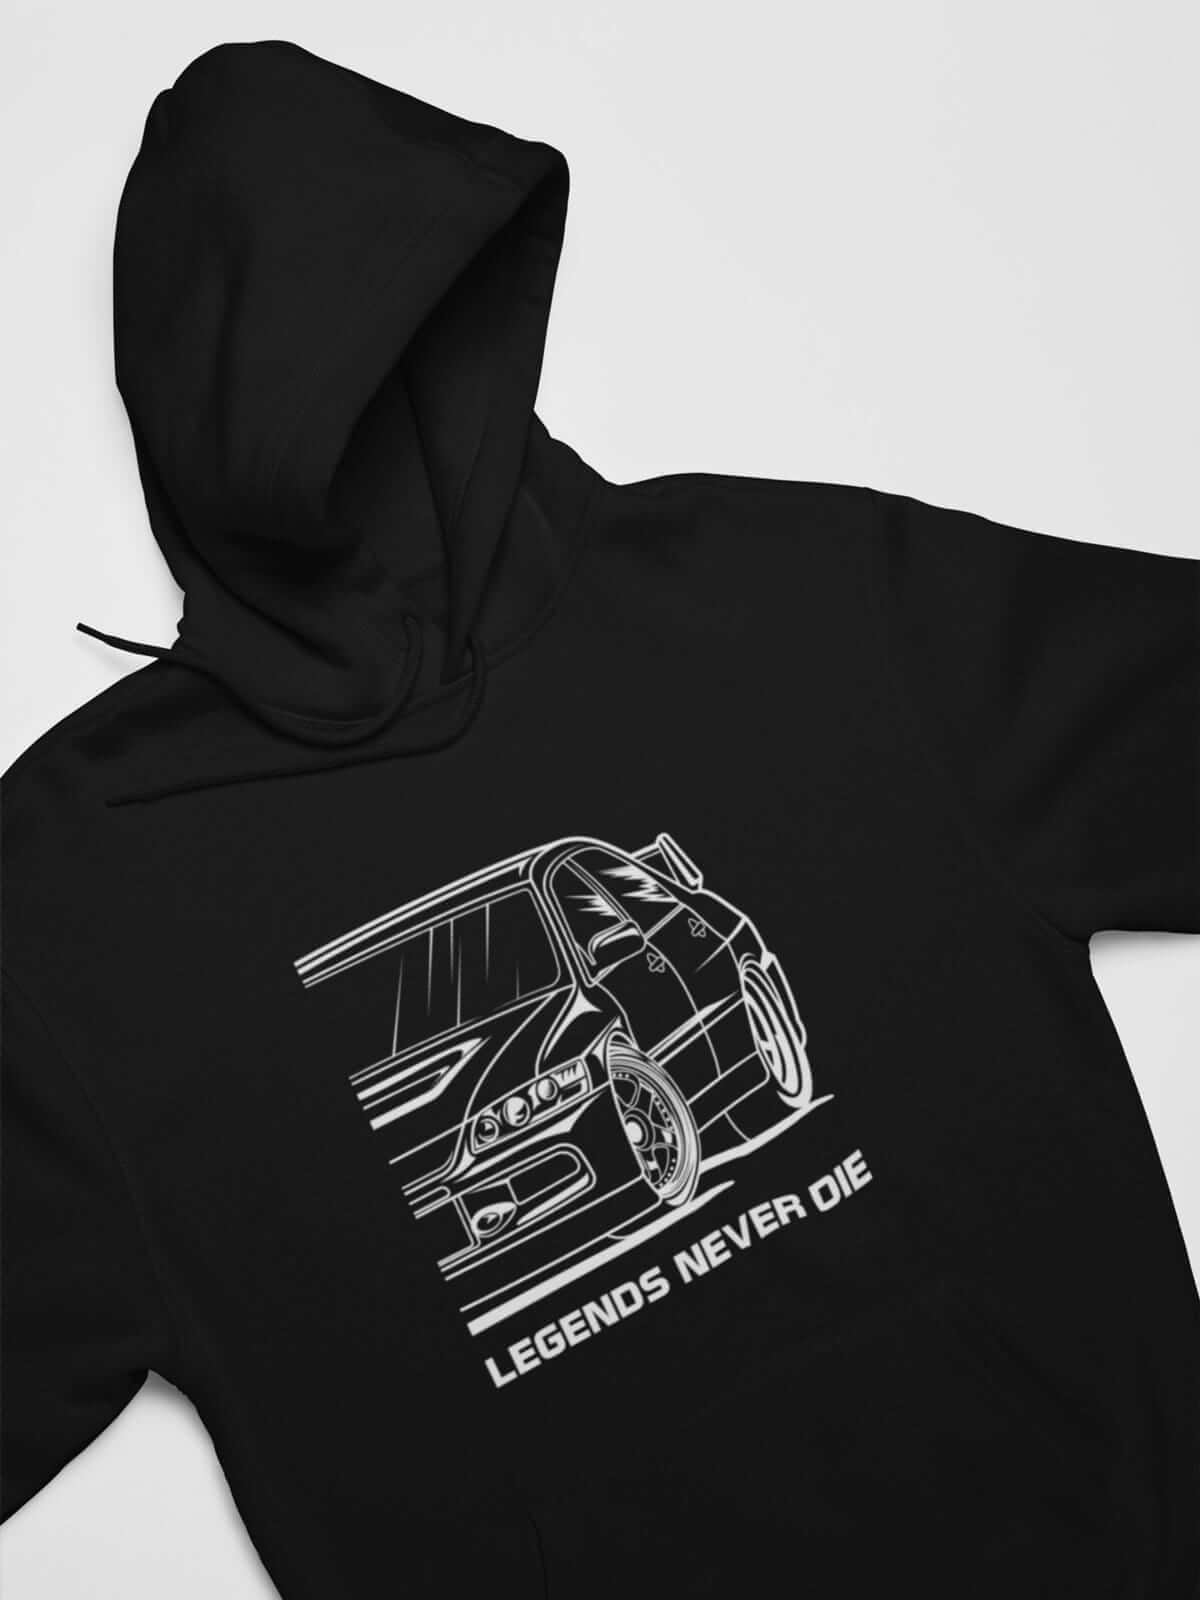 Japanese sports car printed on black car hoodie, JDM sweatshirt, car guy gift, car lover, car fan, car enthusiast, petrolhead, JDM lover, boyfriend gift idea,